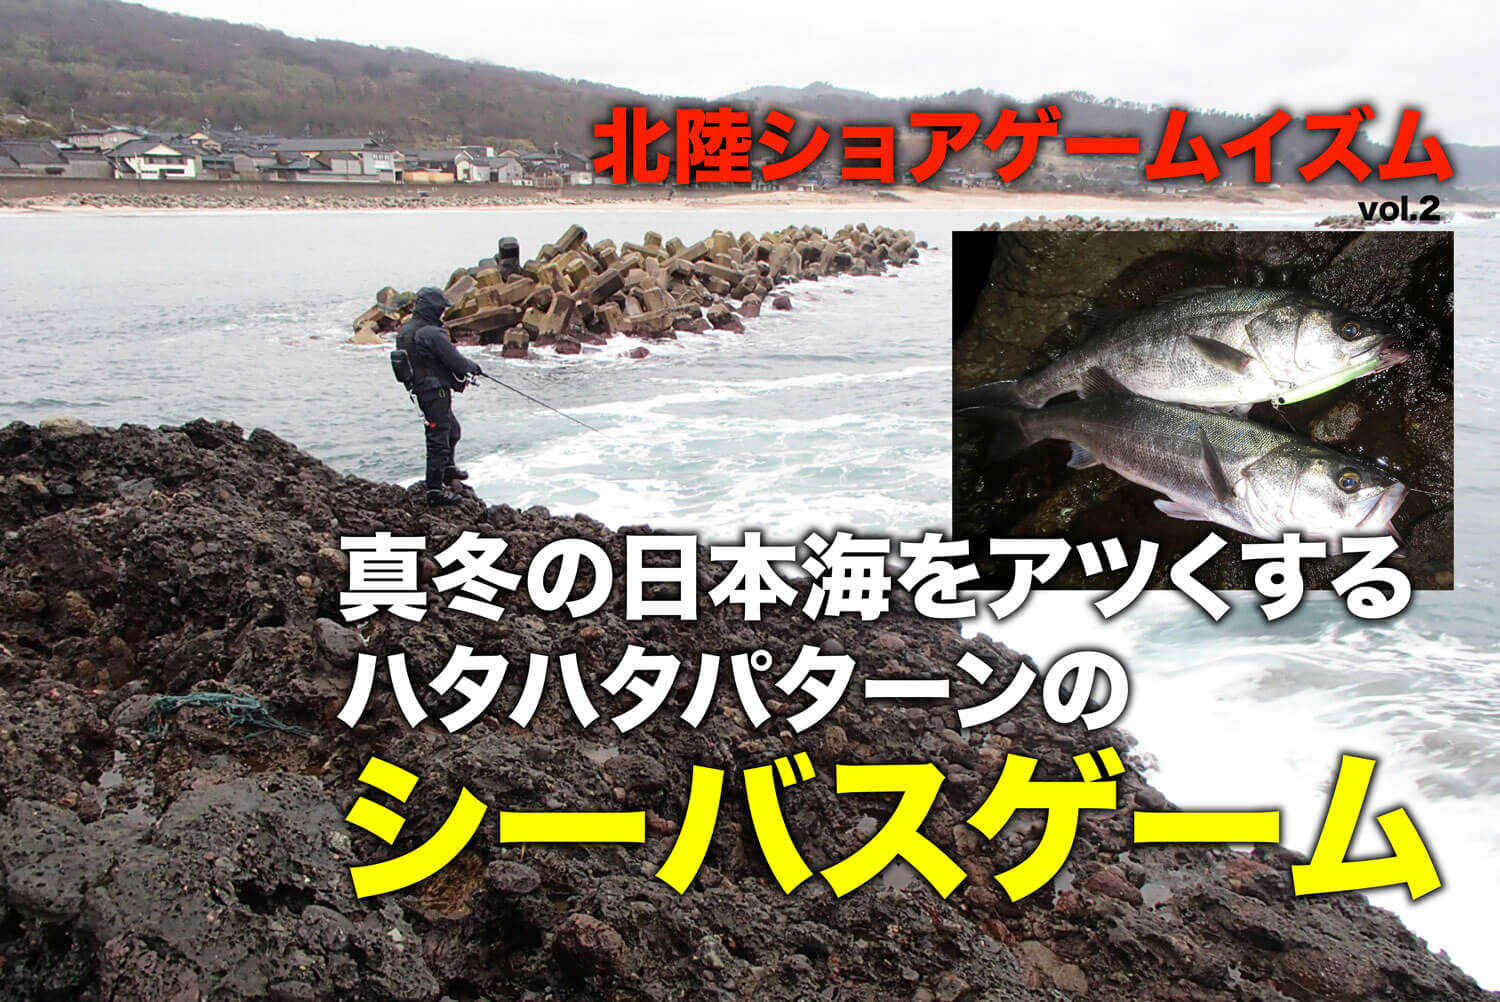 真冬の日本海をアツくする ハタハタパターンのシーバスゲーム 北陸ショアゲームイズム Vol 2 Sw 釣り人のためのメディア